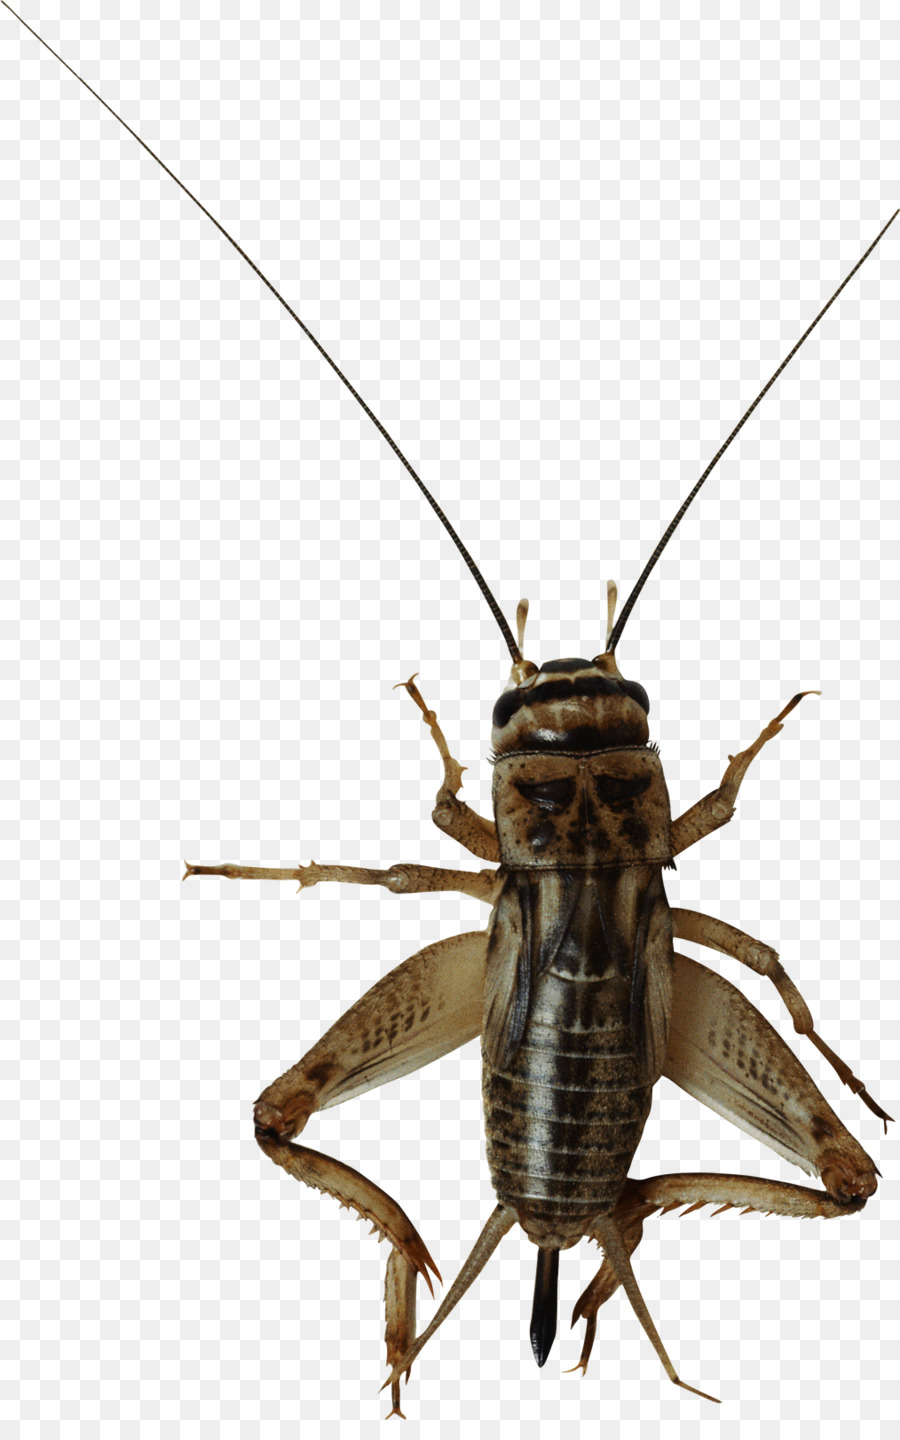 An Insekten clipart - Insekt